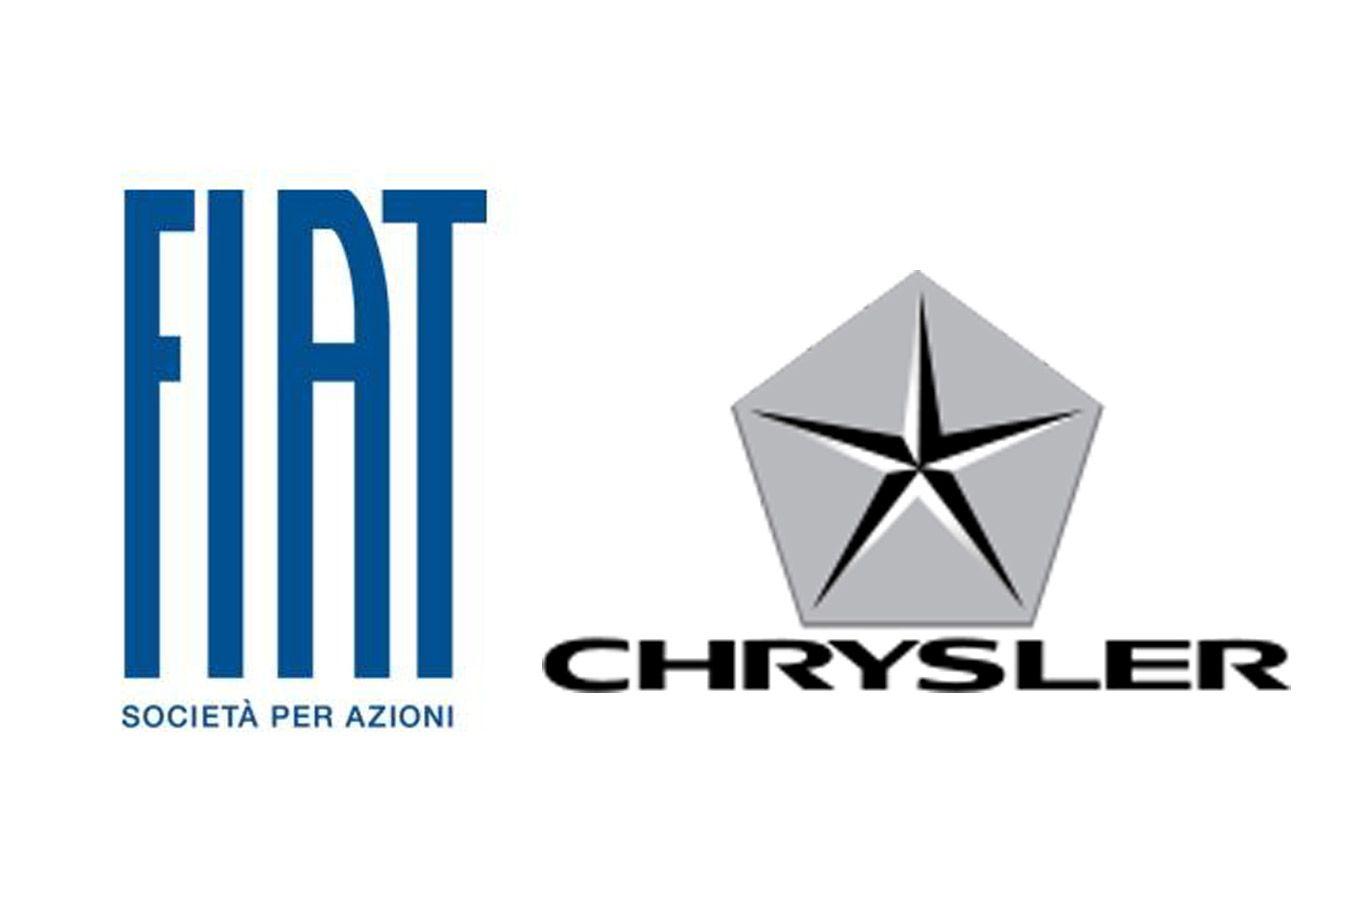 Fiat-Chrysler Logo - Fca chrysler Logos